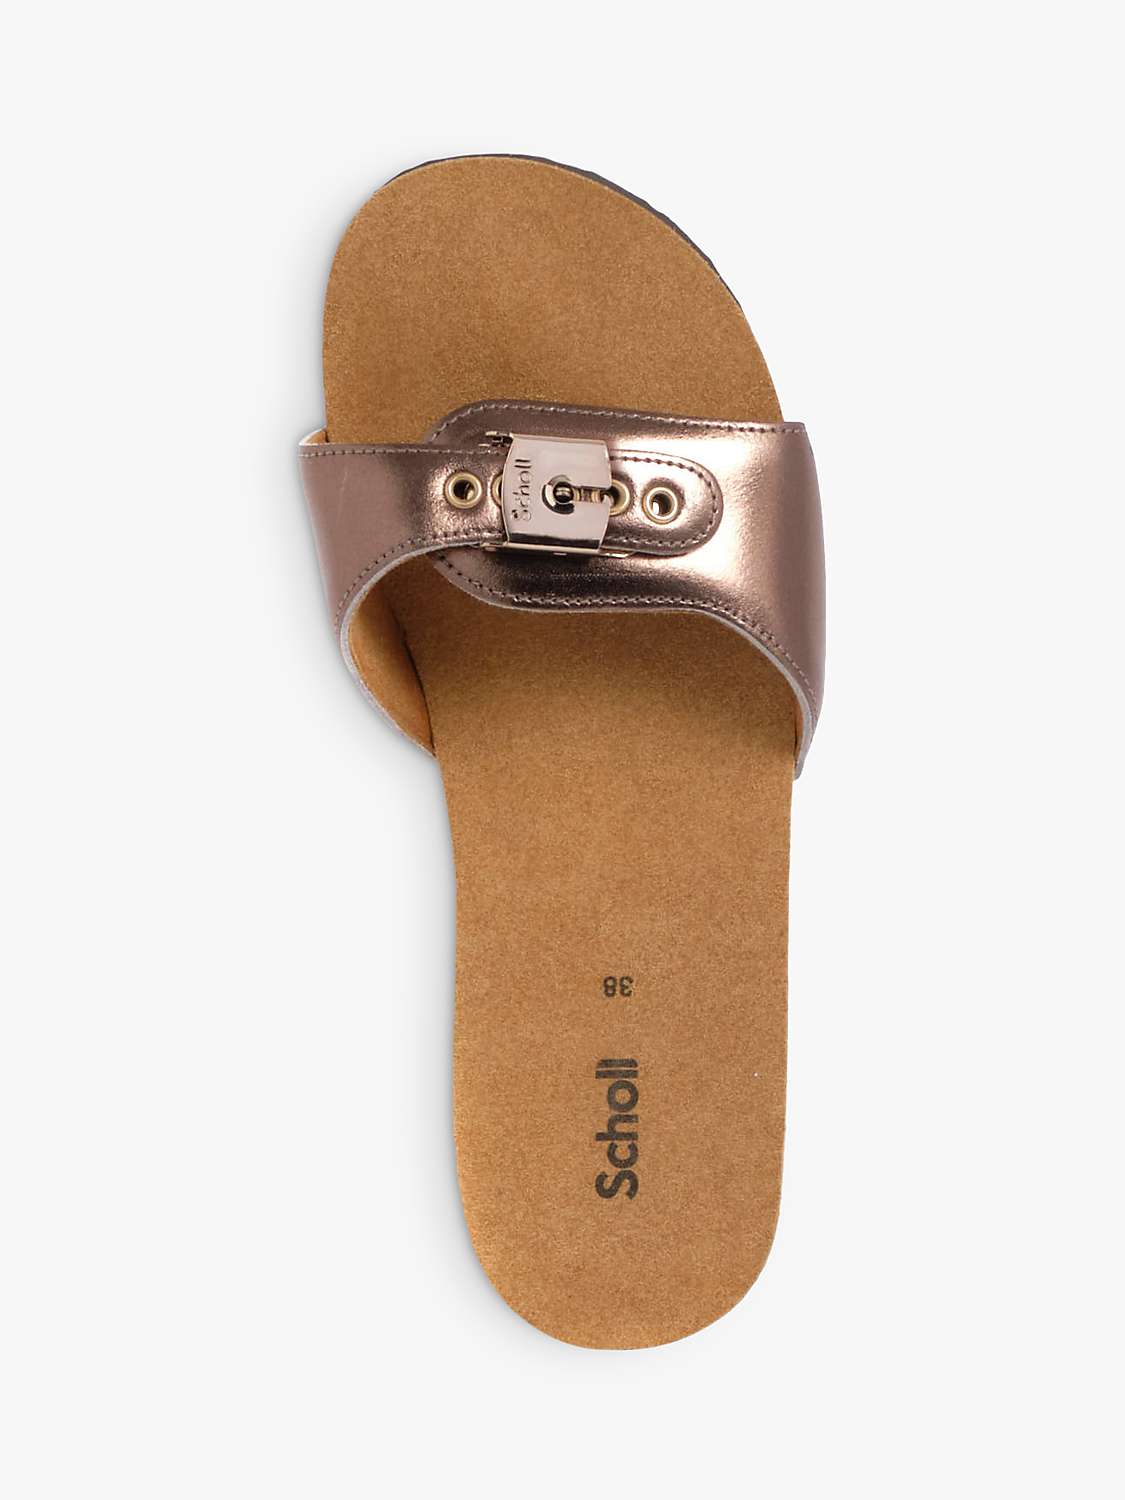 Buy Scholl Pescura Cork Heel Sandals Online at johnlewis.com